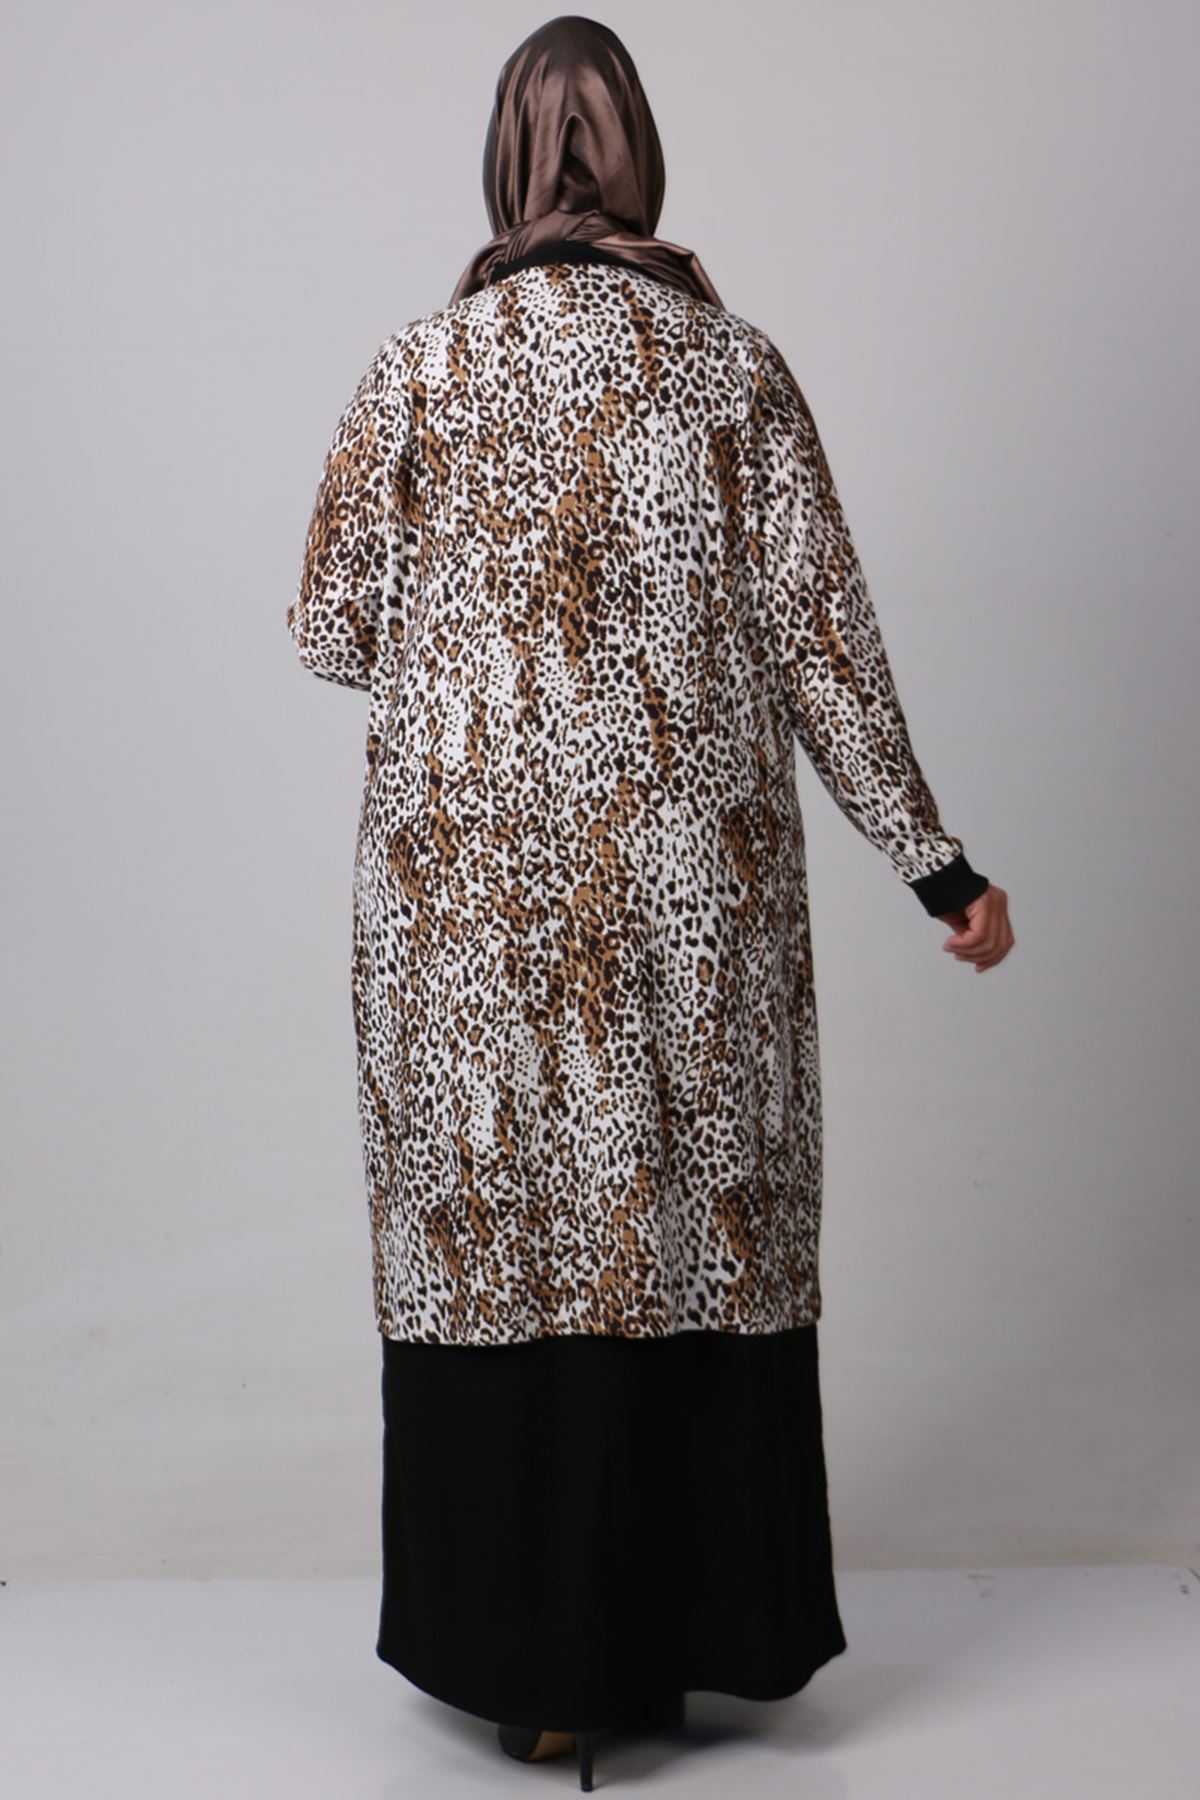 37206 Large Size Crassula Jacket Dress Suit- Leopard